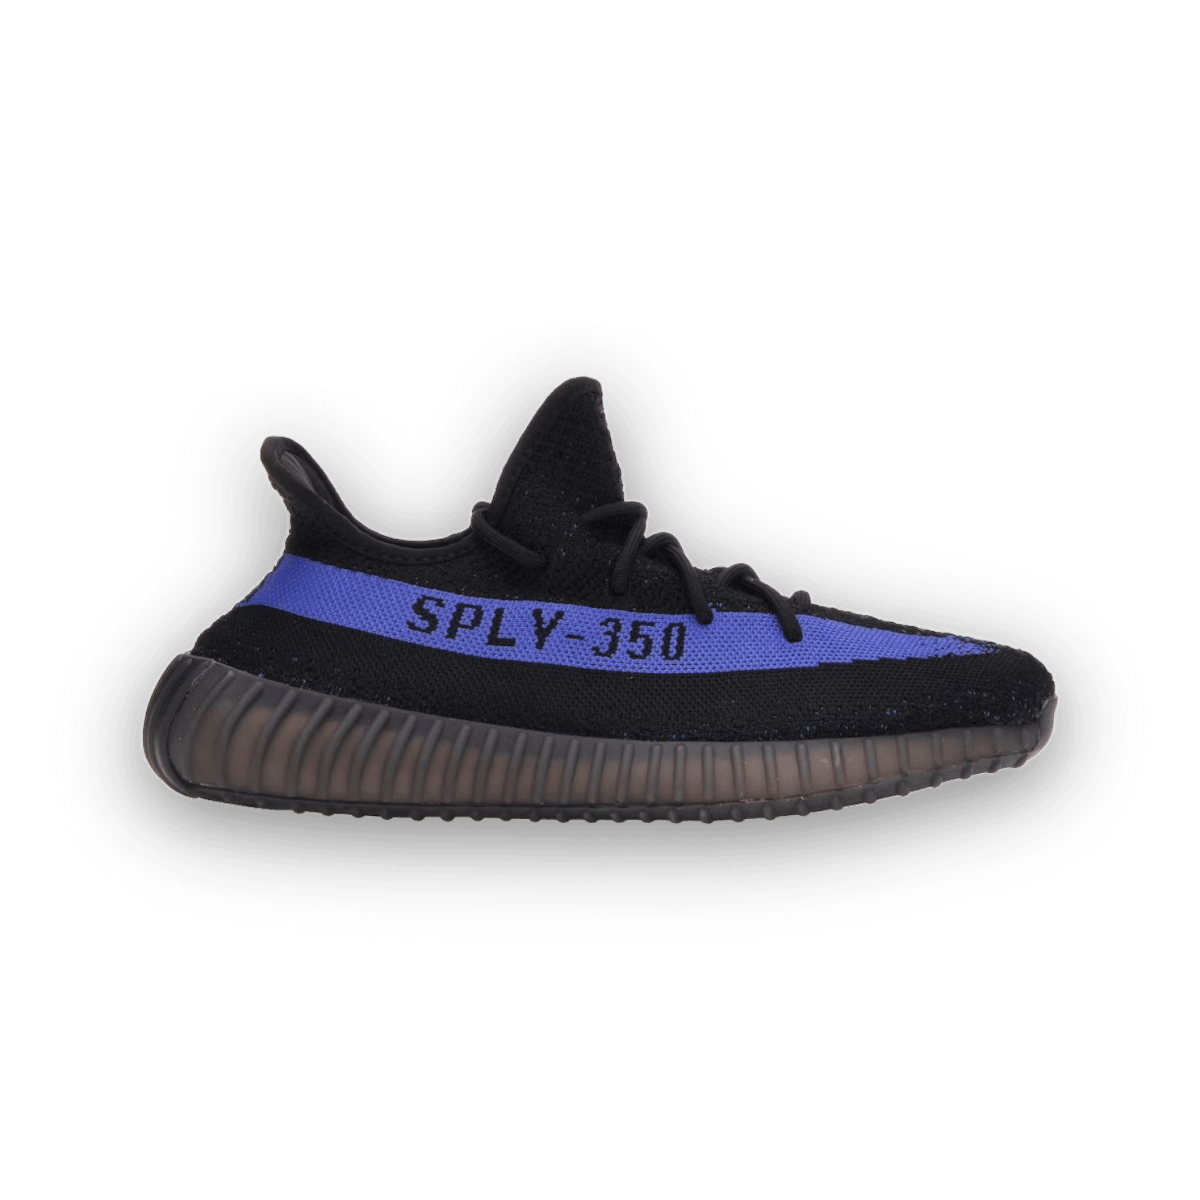 Yeezy Boost 350 V2 Dazzling Blue - Low Sneaker - Jawns on Fire Sneakers & Streetwear